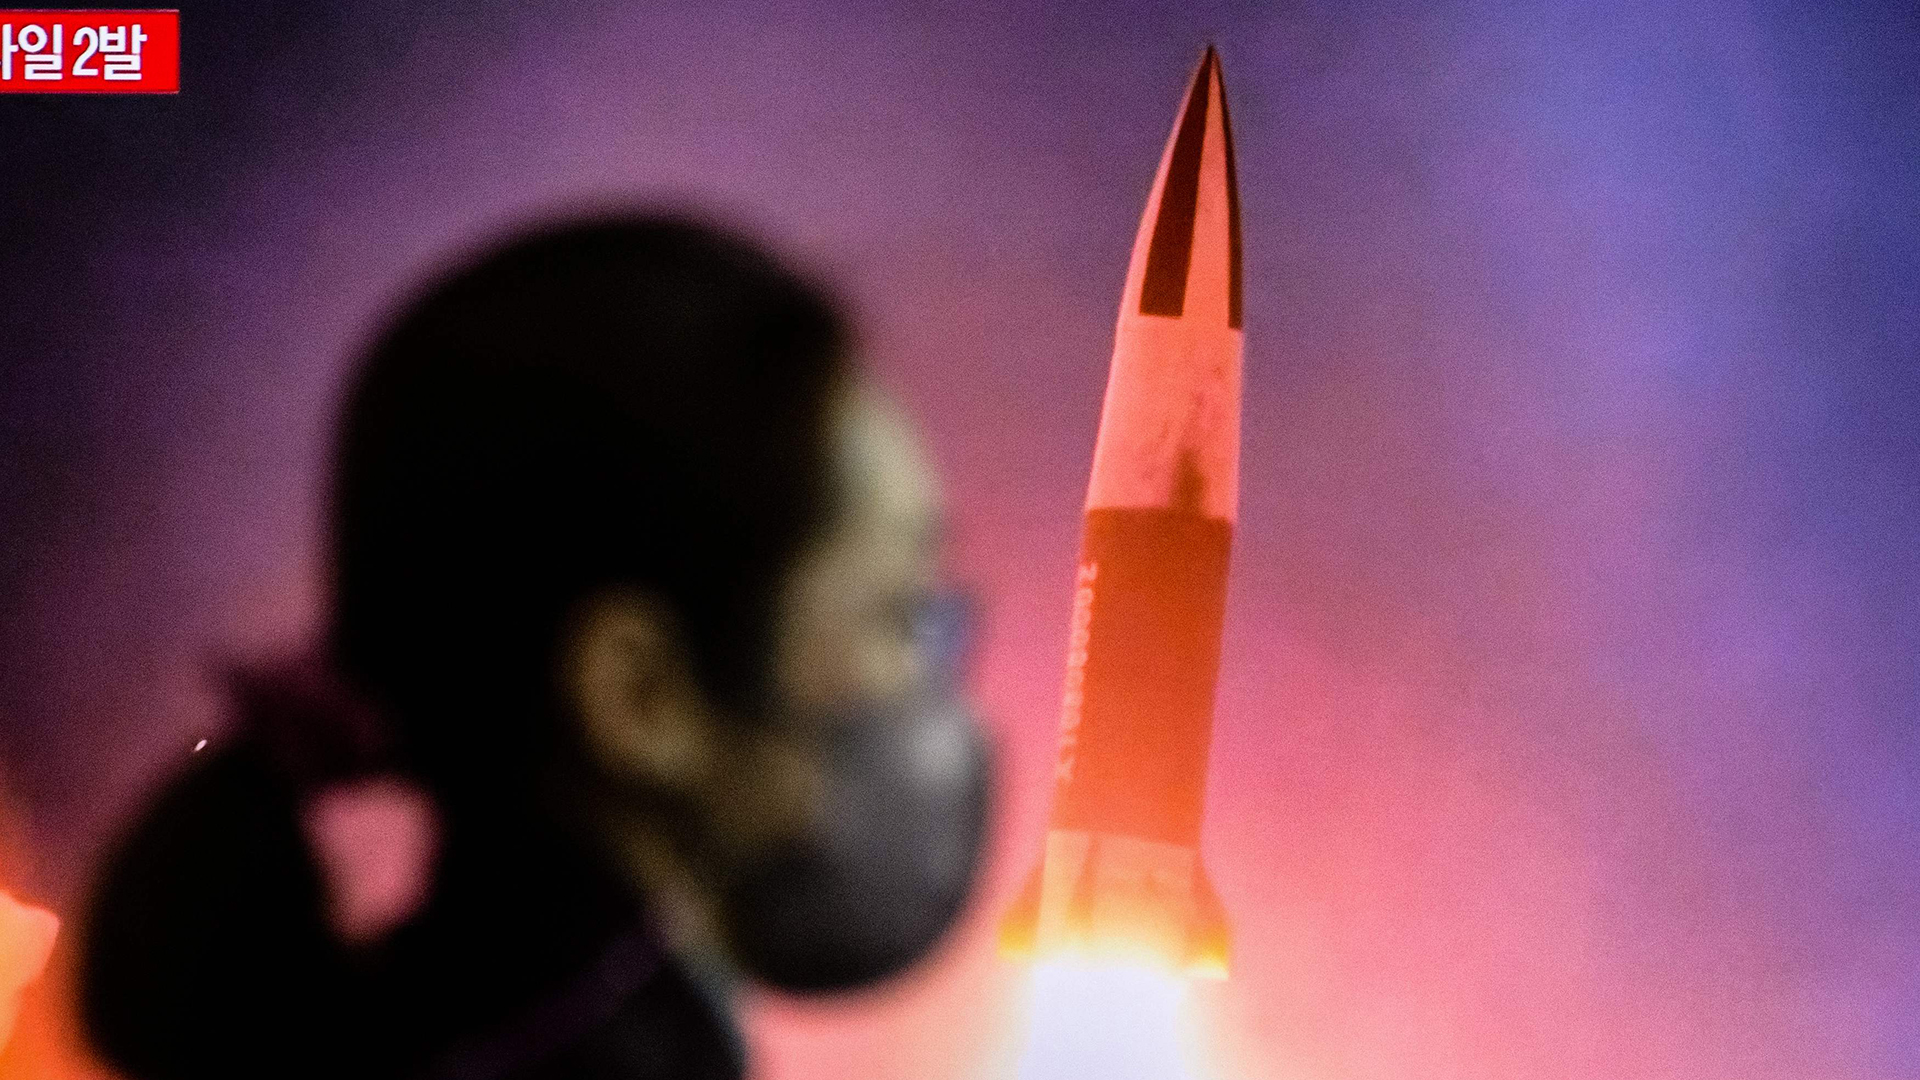 Eine Frau geht an einem Bahnhof in Seoul an einem Fernseher vorbei, auf dem eine Nachrichtensendung mit Aufnahmen von einem nordkoreanischen Raketentest gezeigt wird. | AFP